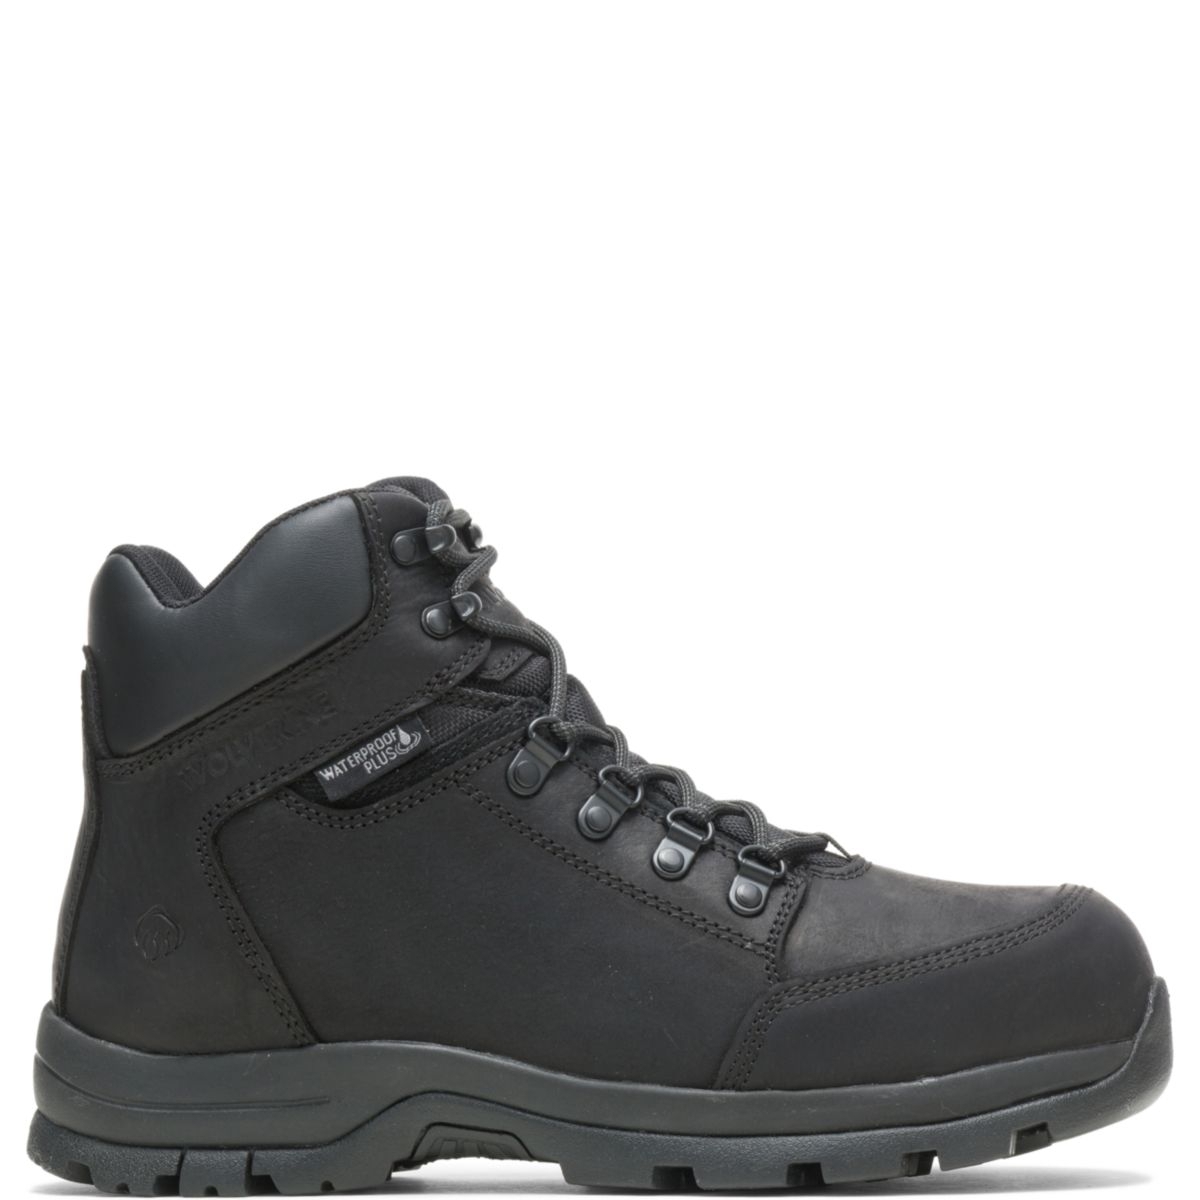 WOLVERINE Men's Grayson Steel Toe Waterproof Work Boot Black - W211042 BLACK - BLACK, 7.5